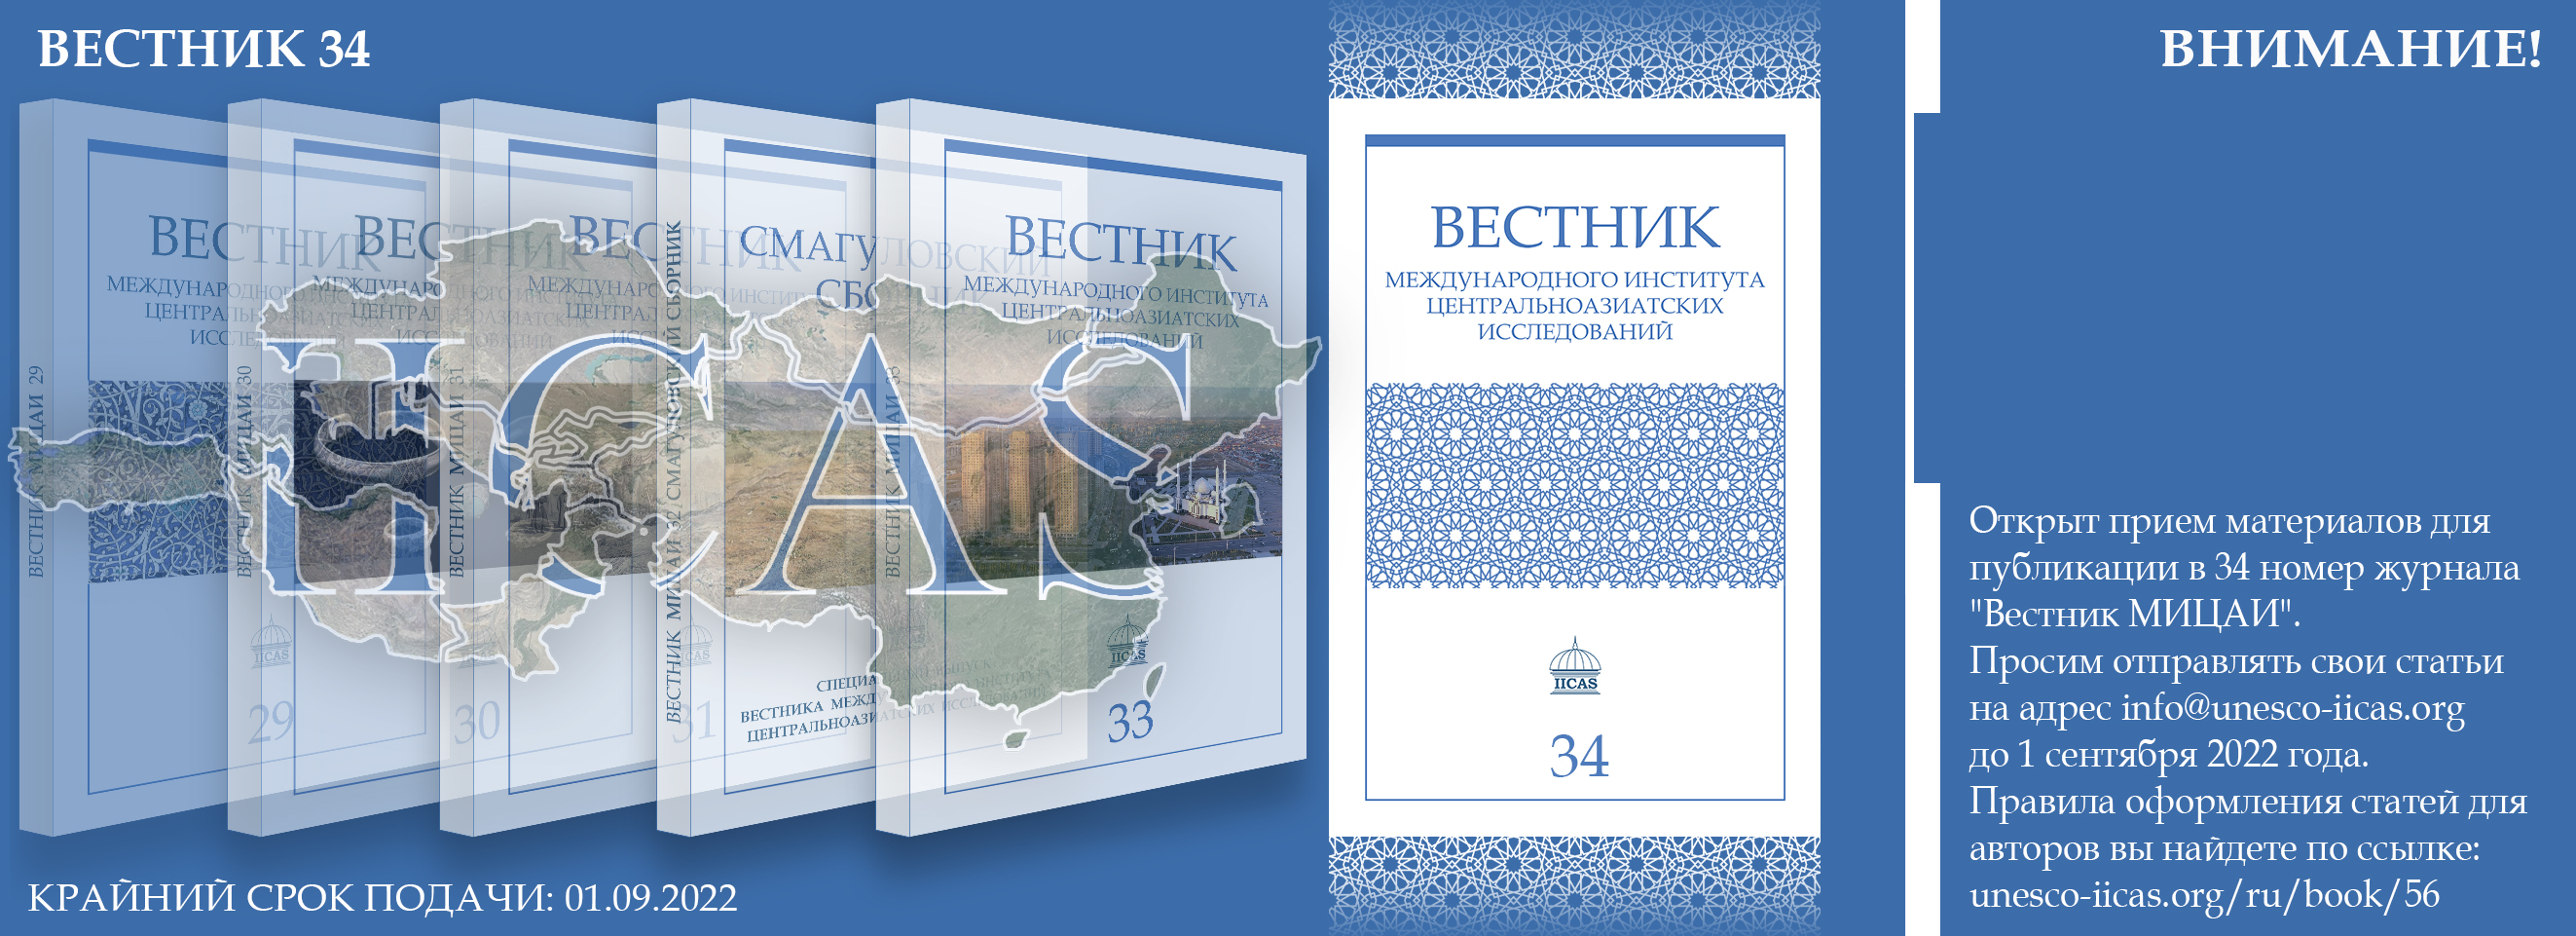 Памятники восточного христианства на территории Казахстана